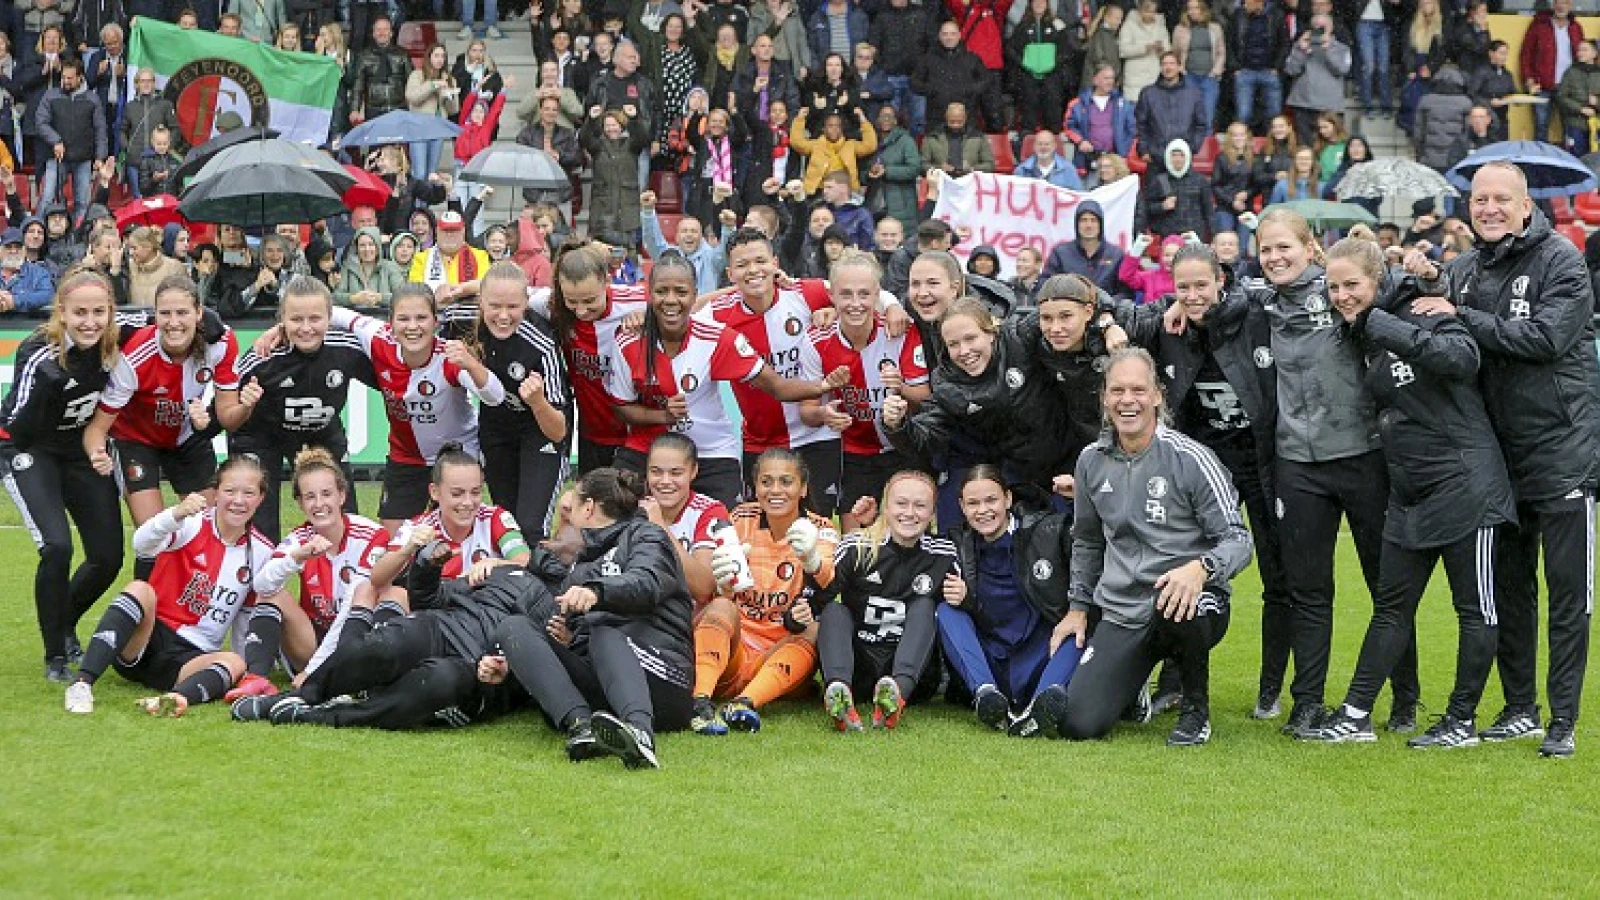 Kaartverkoop Feyenoord Vrouwen 1 - Ajax Vrouwen 1 is begonnen